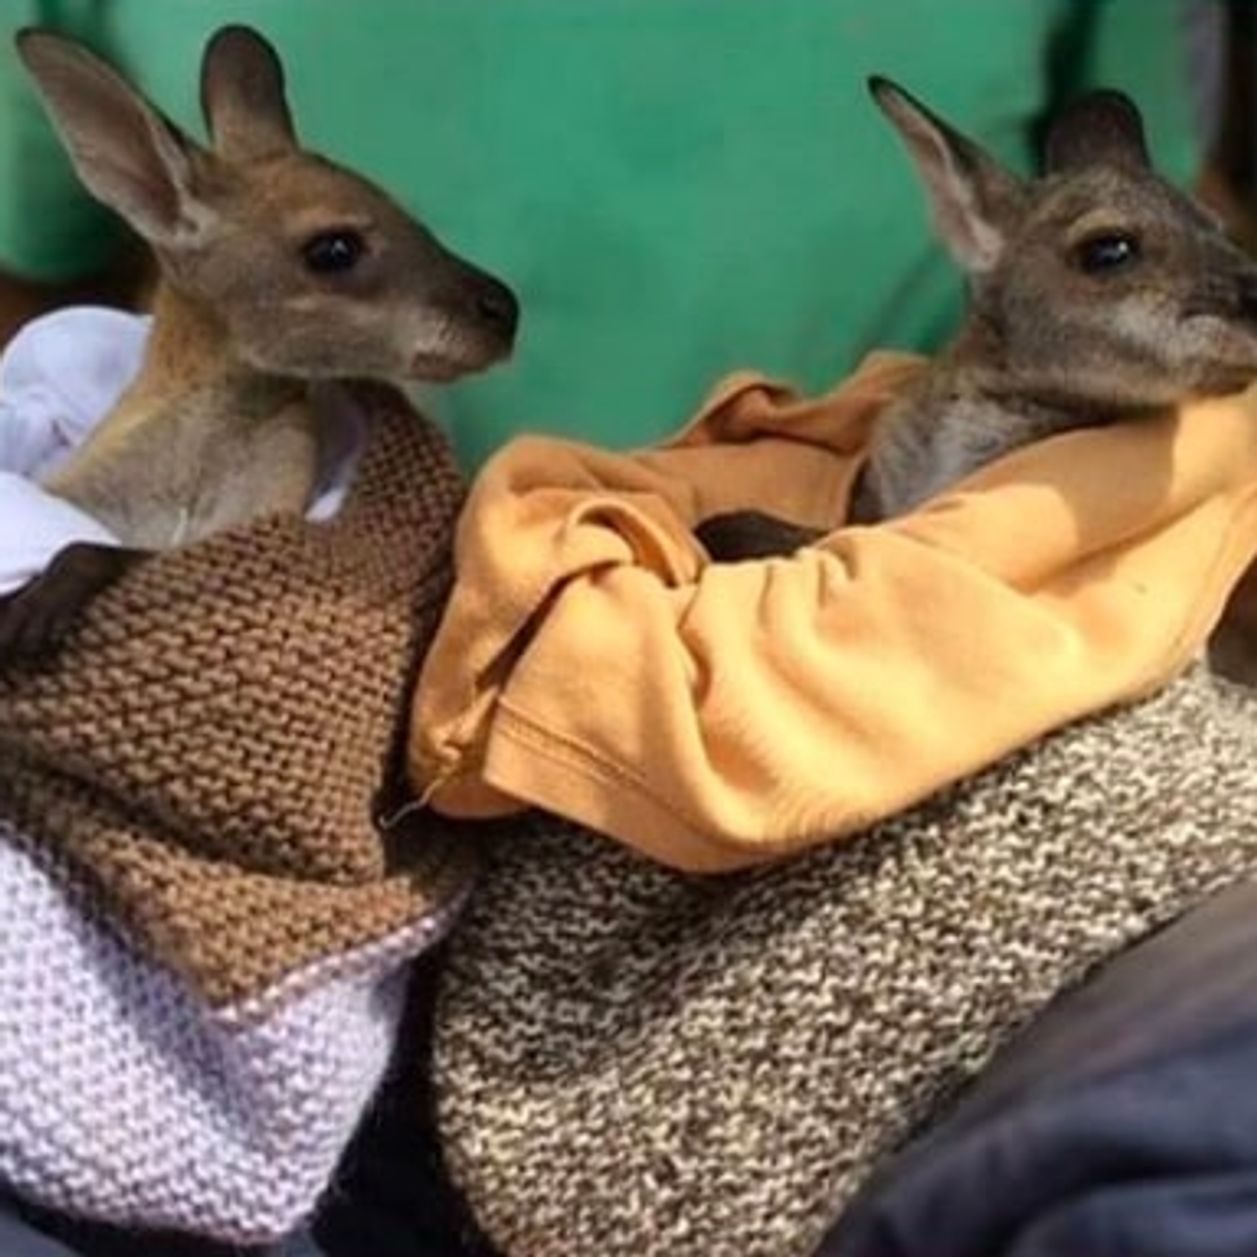 Elles fabriquent des poches en tissu pour les bébés marsupiaux orphelins en Australie